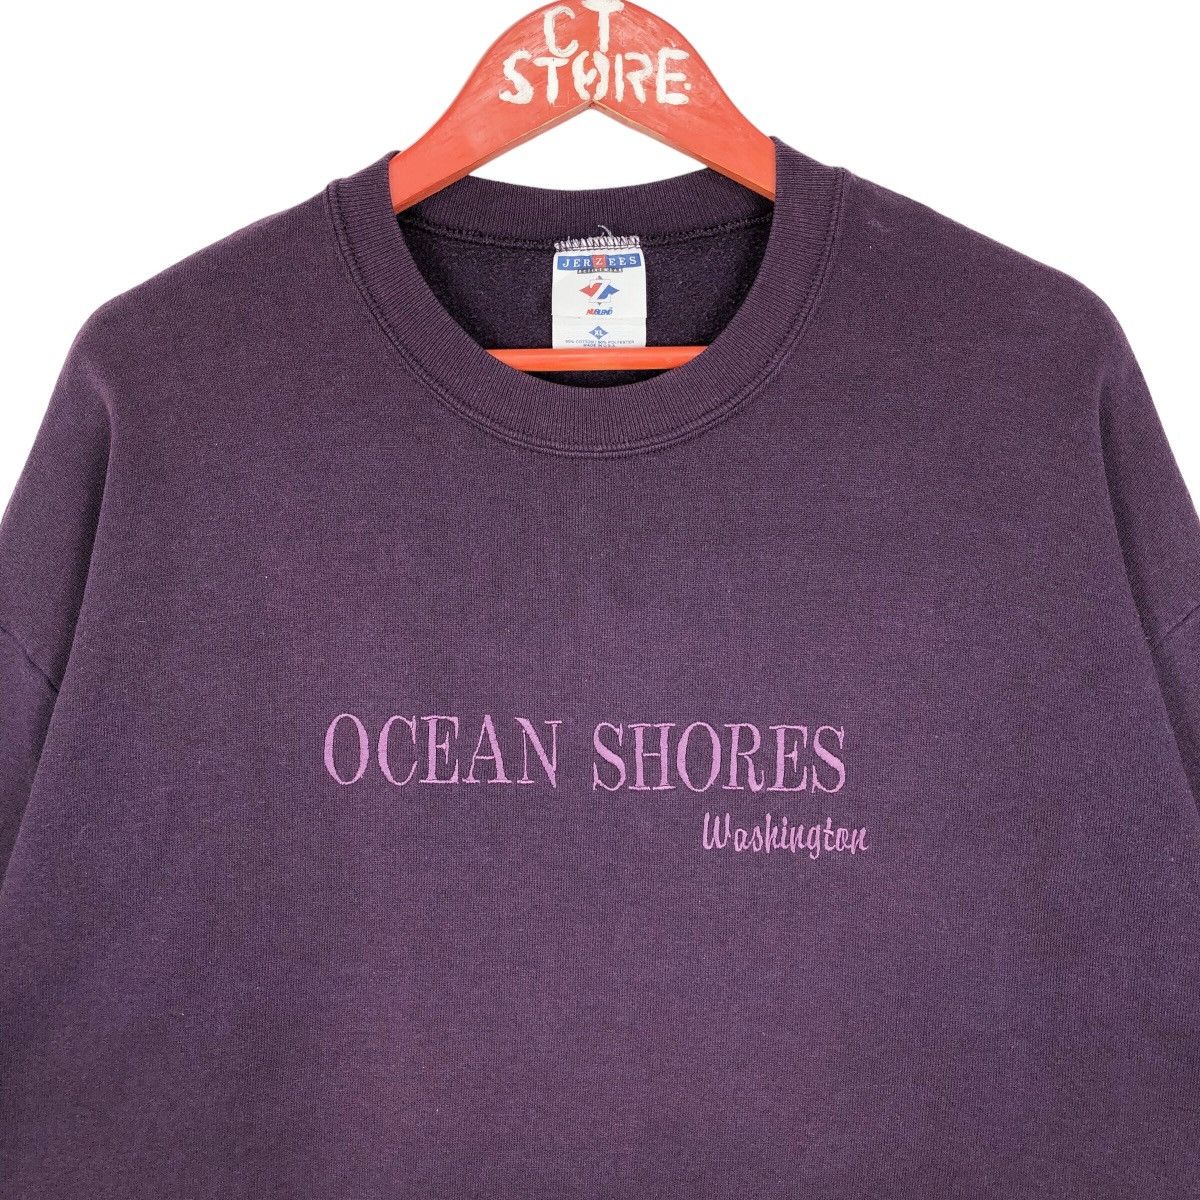 Vintage Ocean Shores Washington Crewneck Sweatshirt - 3